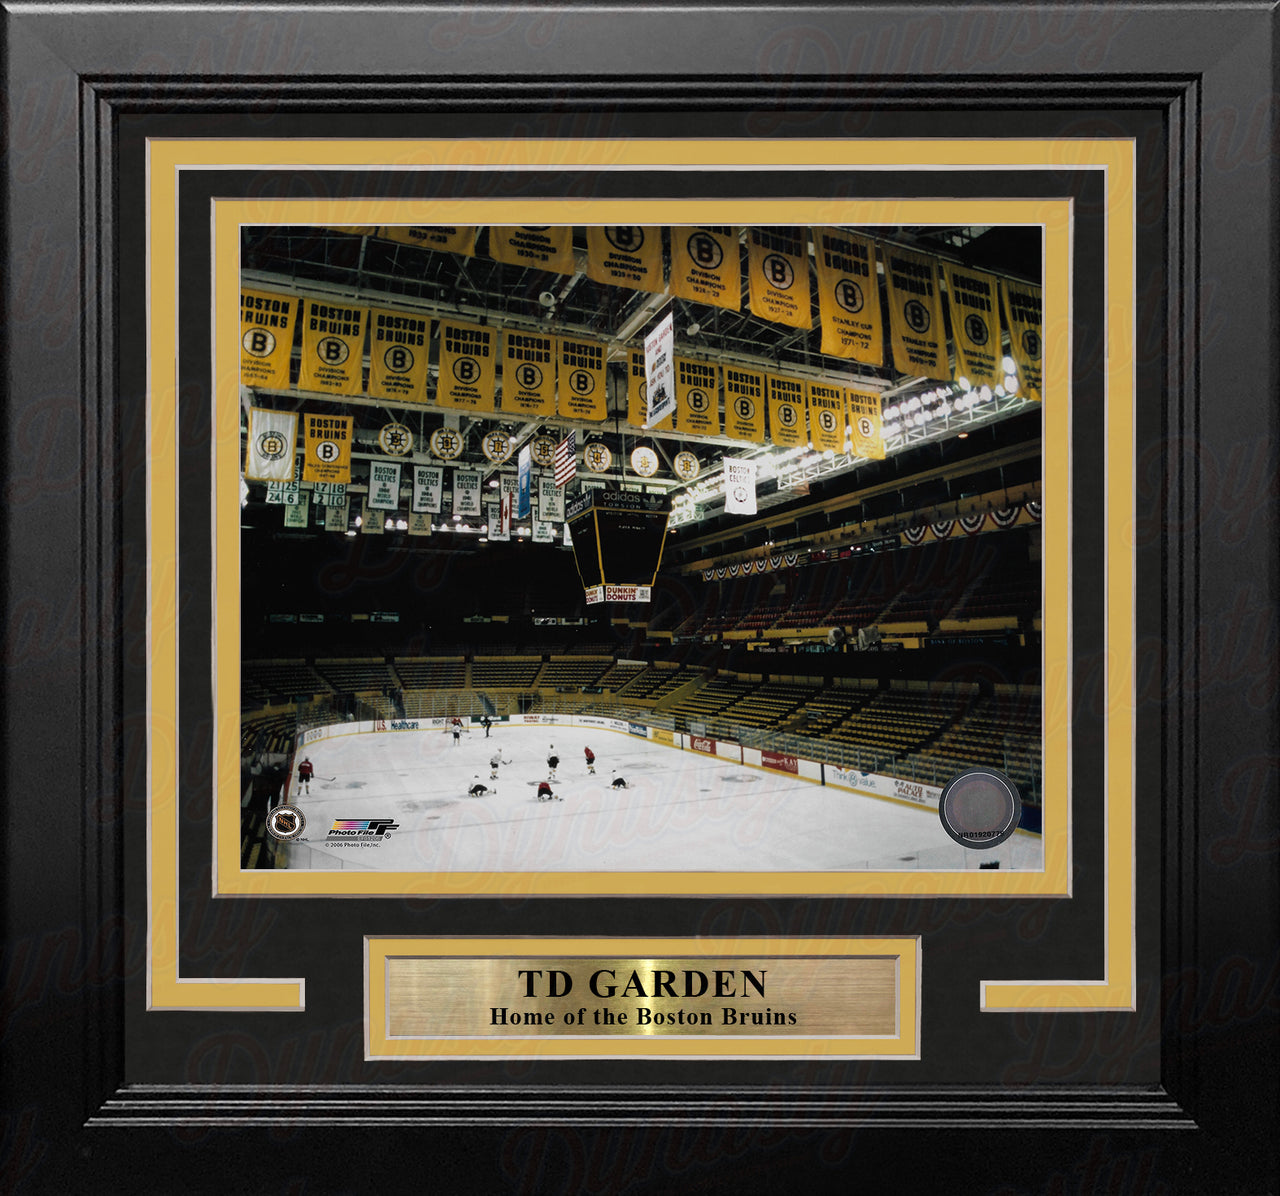 Boston Bruins TD Garden 8" x 10" Framed Vintage Hockey Stadium Photo - Dynasty Sports & Framing 